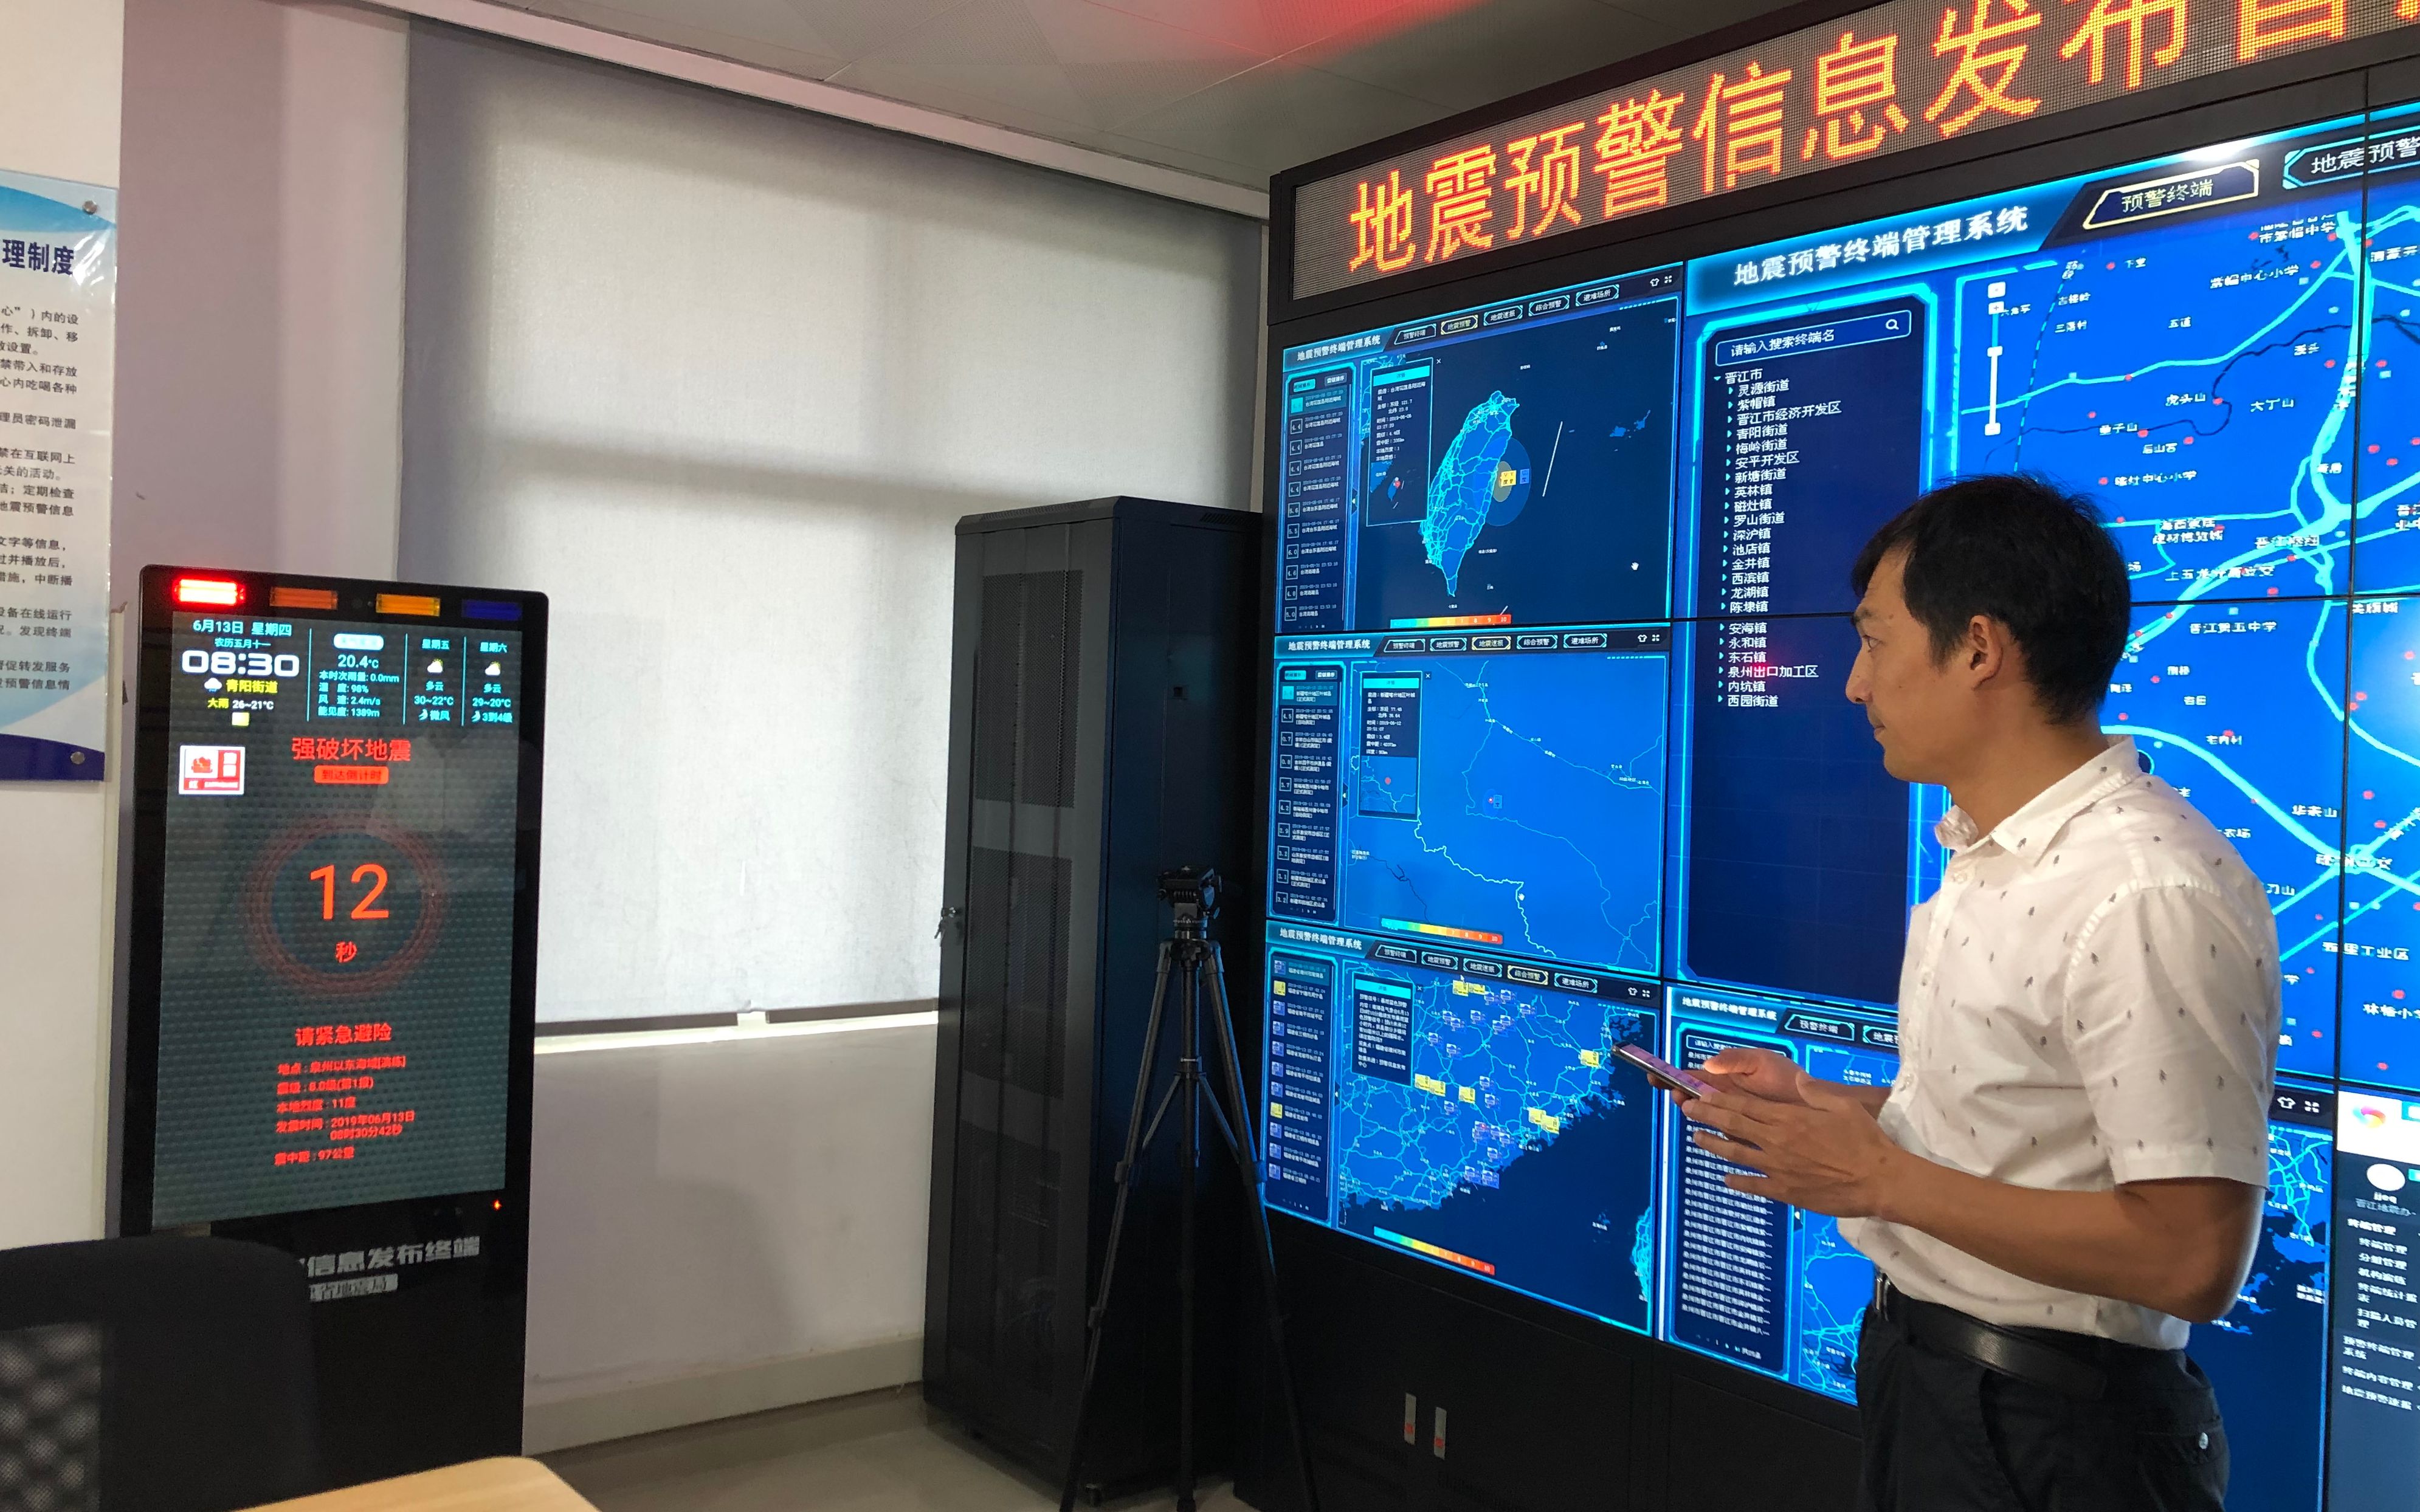 福建省晋江市地震预警信息发布分中心，技术人员模拟演示终端机发出预警信息的情景。新京报记者 周依 摄